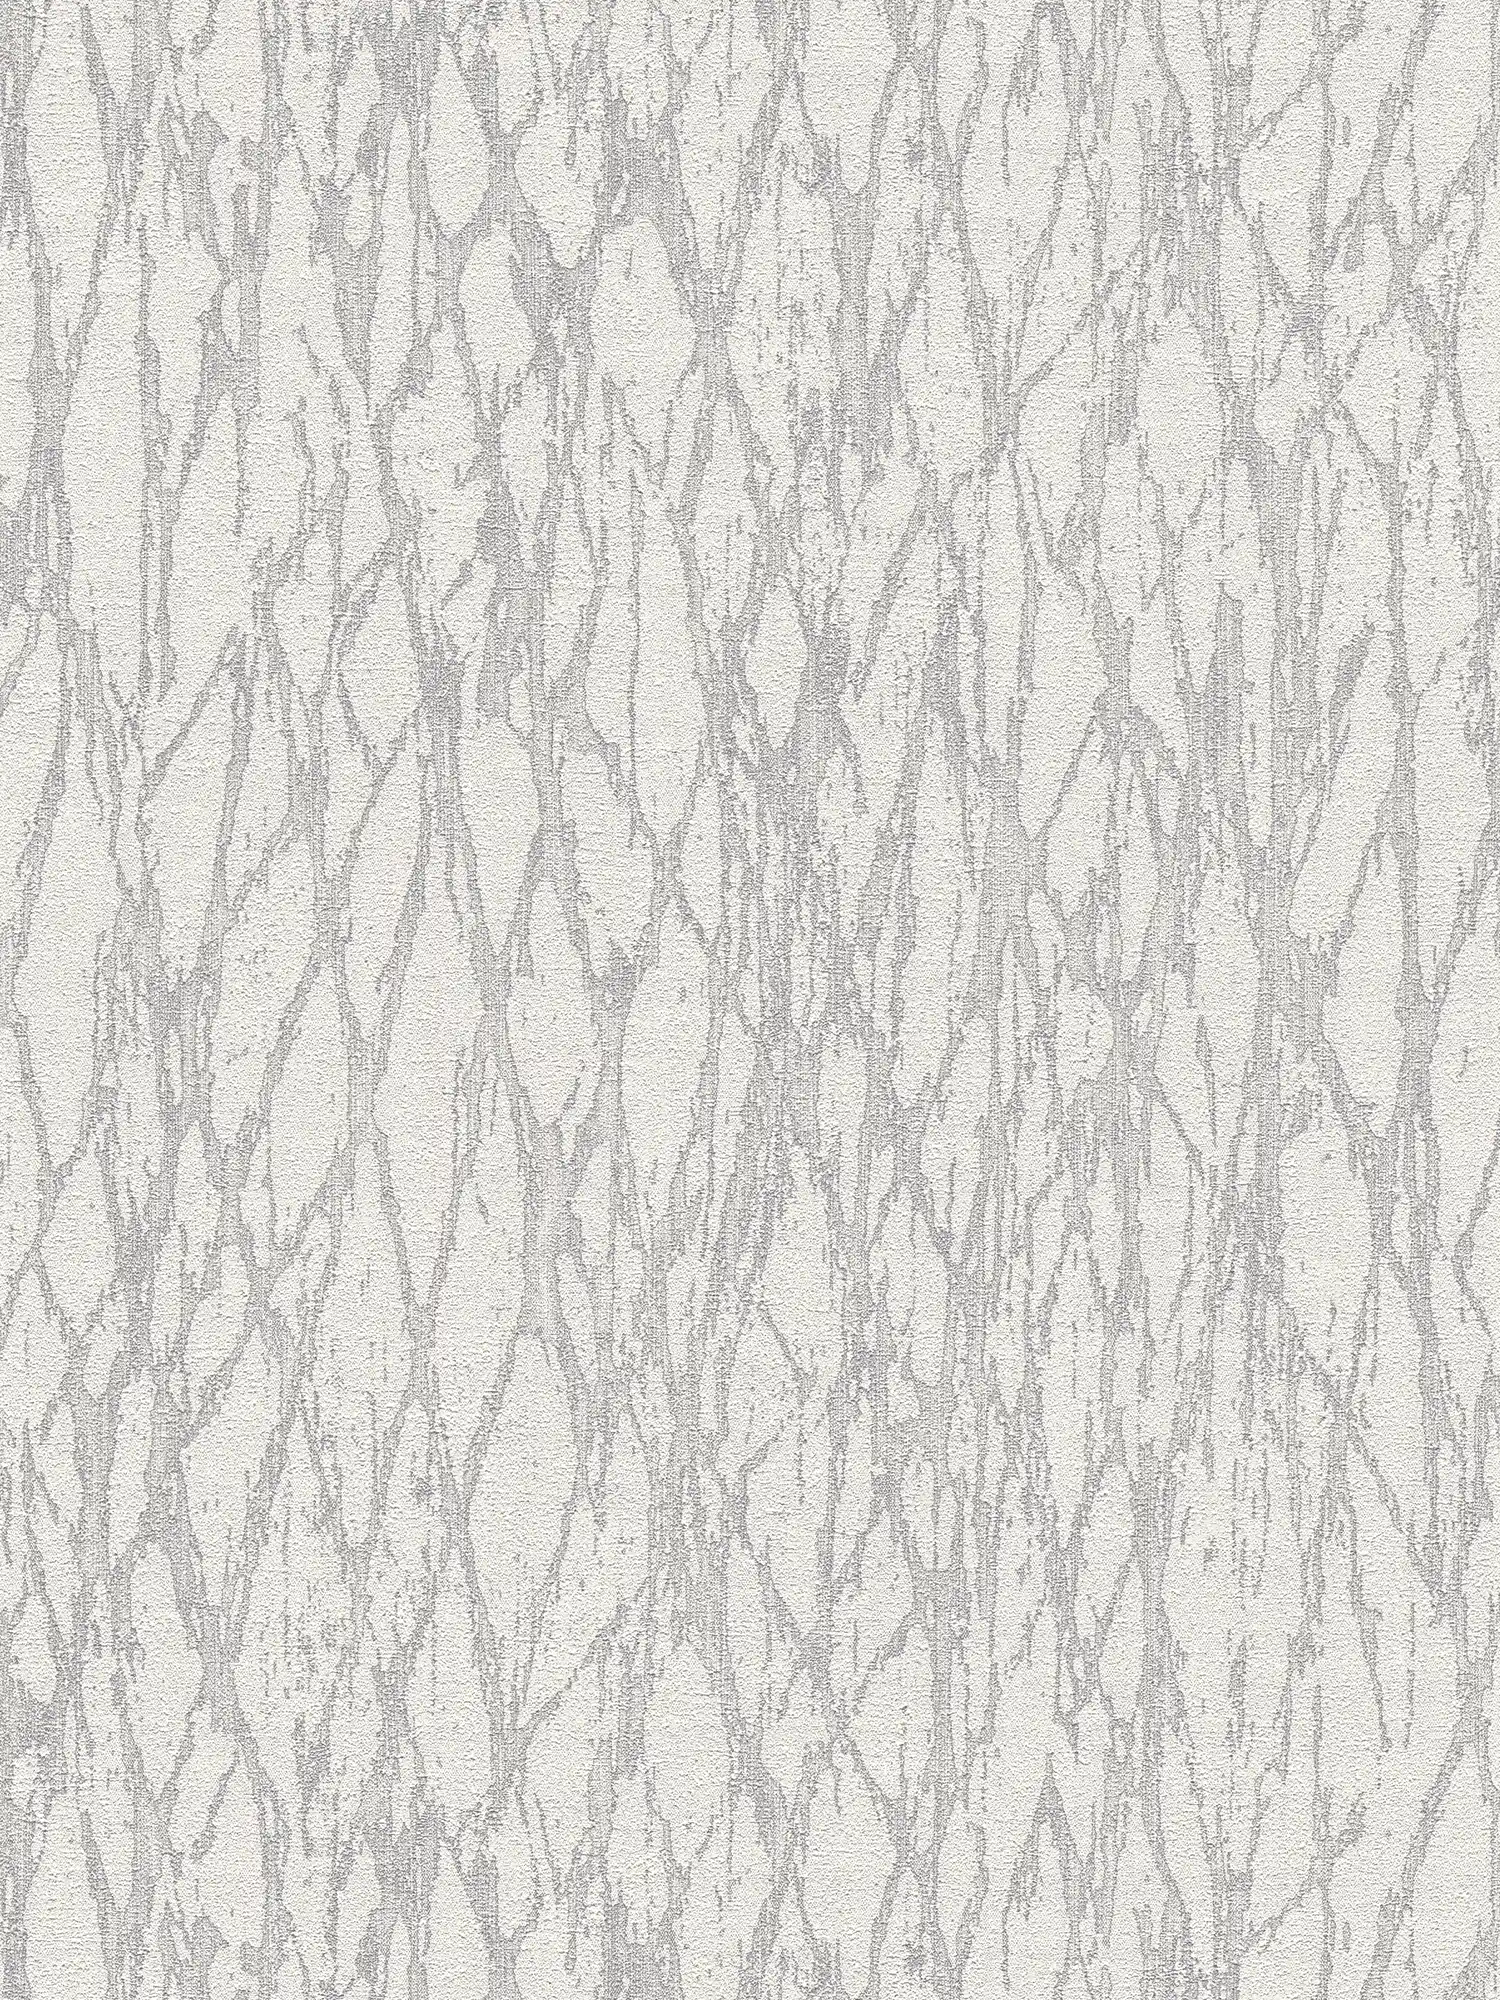 Vliestapete mit abstrakter Linien Bemusterung leicht glänzend – Weiß, Grau, Silber
